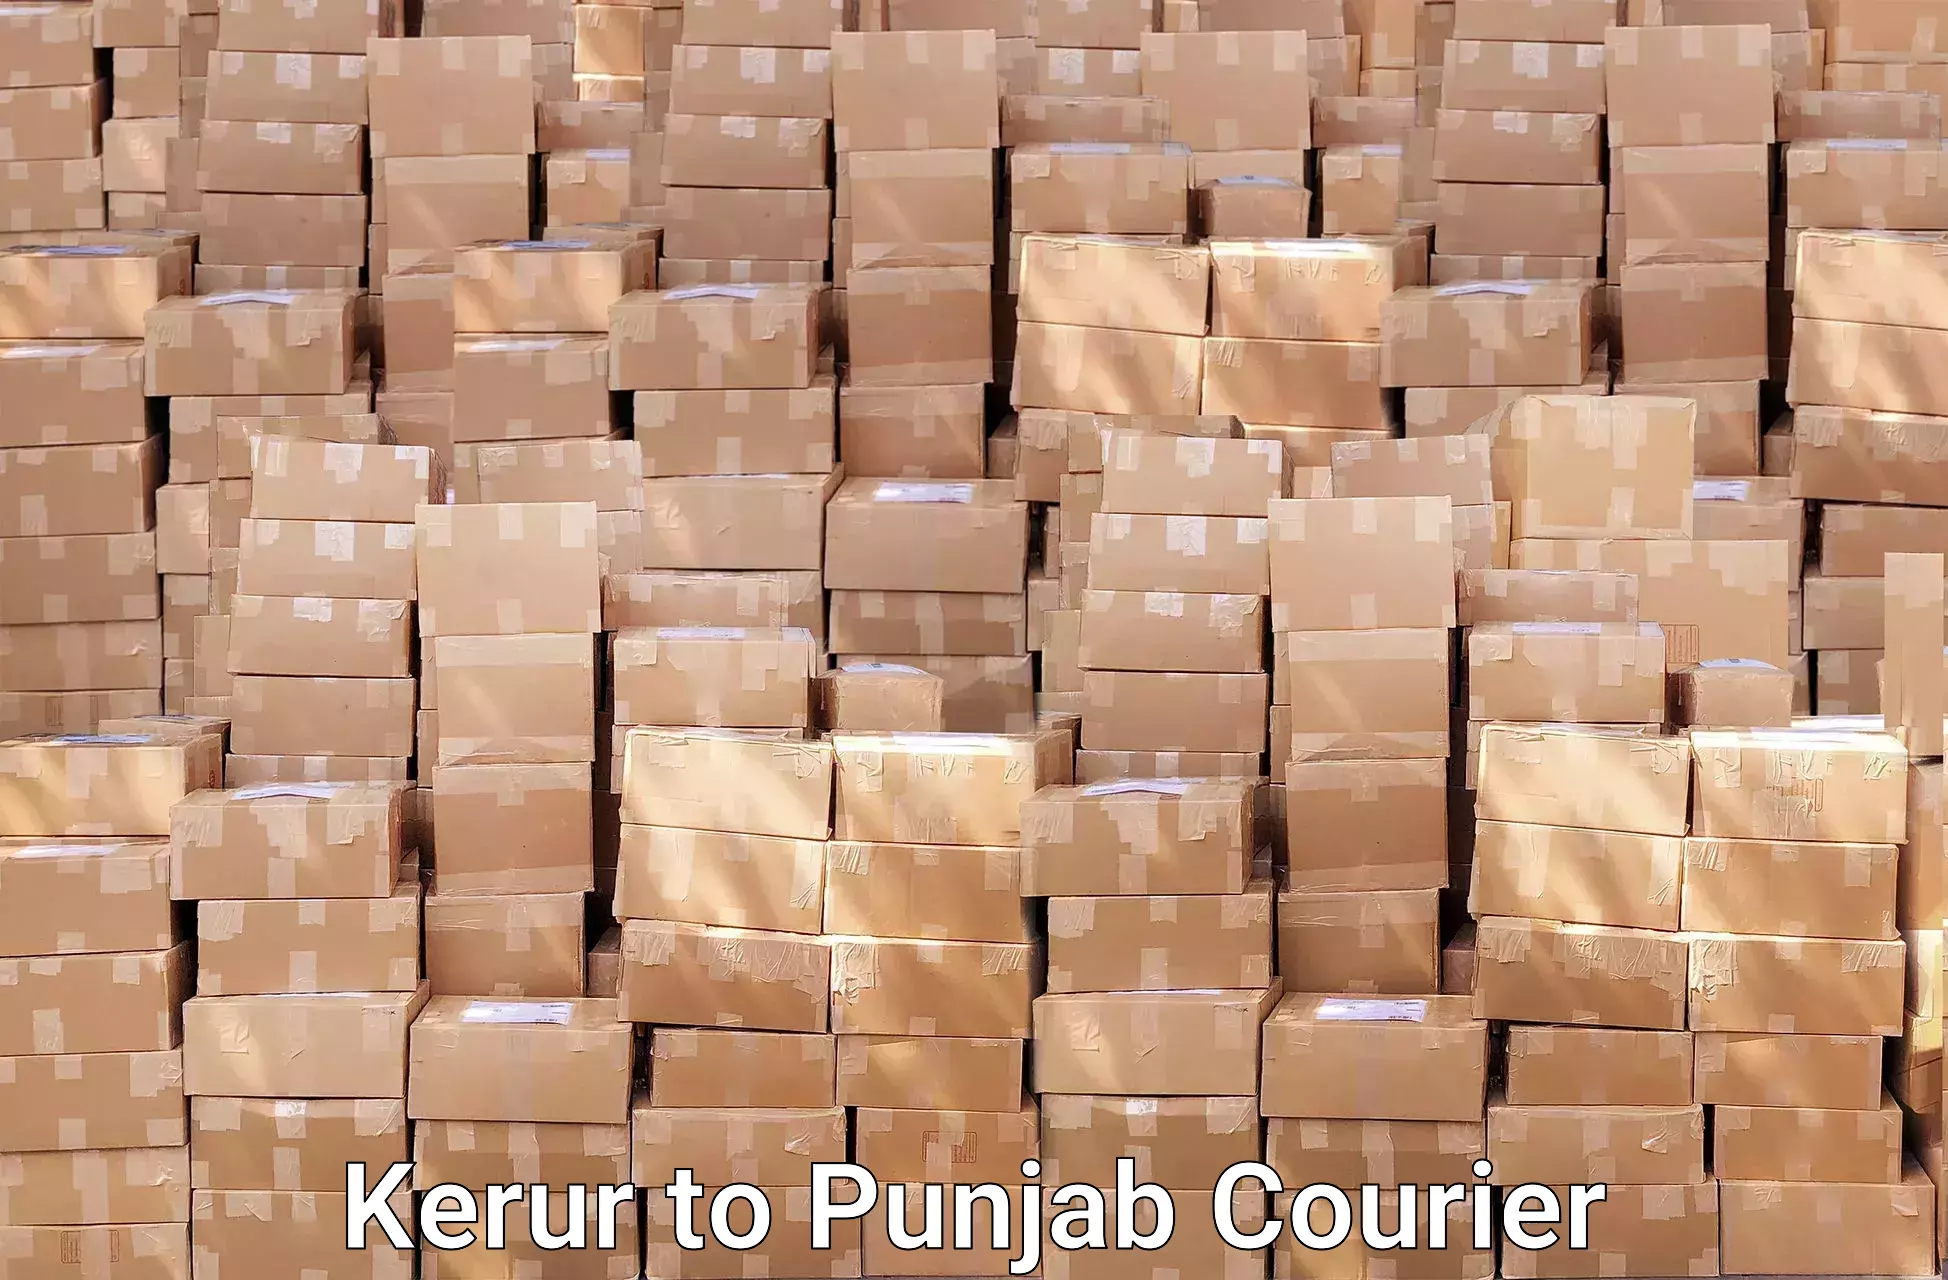 Household moving experts Kerur to Punjab